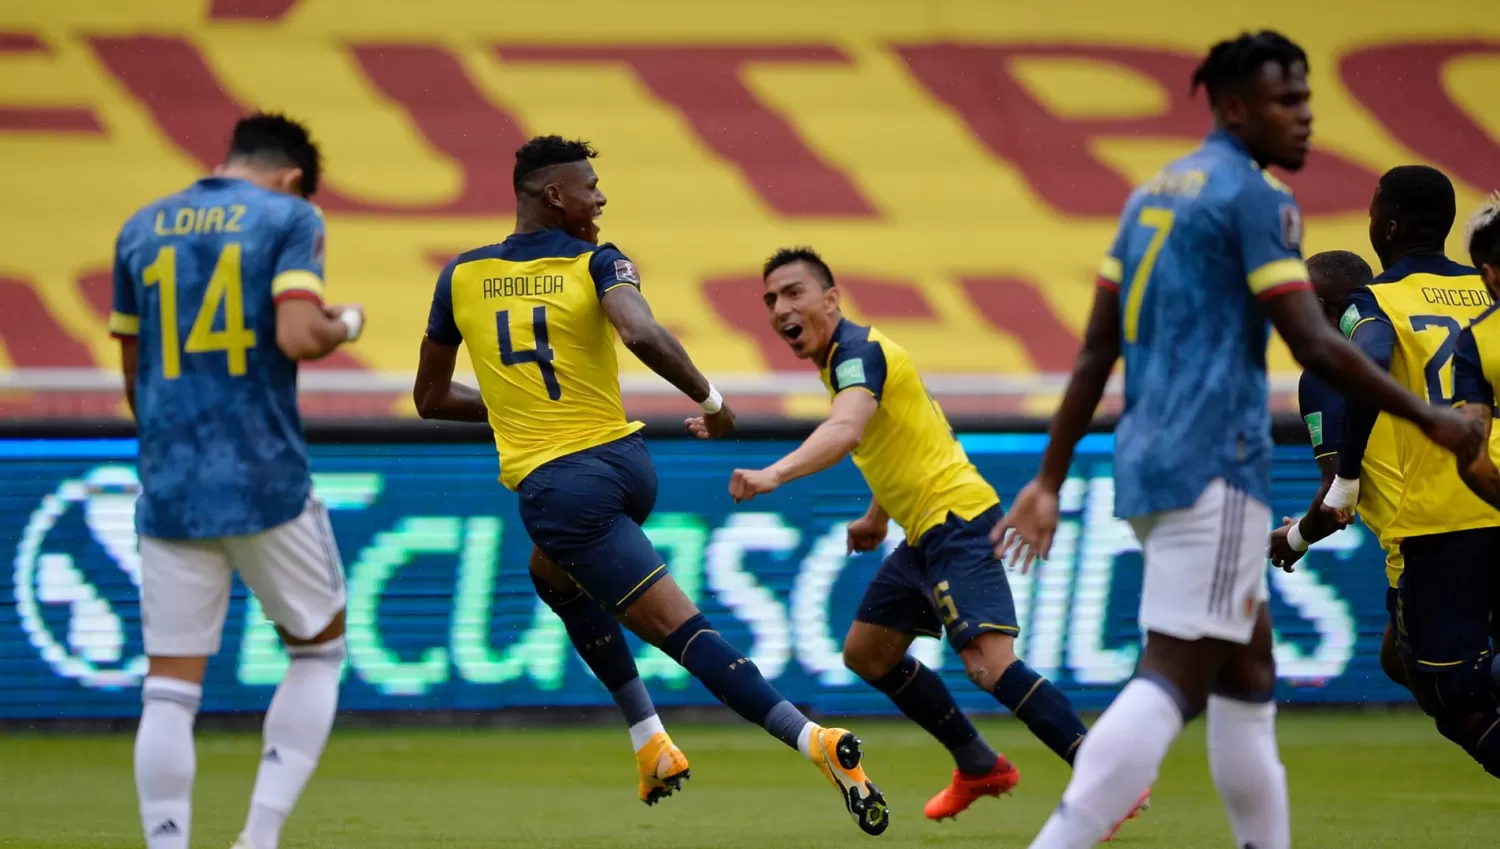 VICTORIA PARCIAL. Copa América: Colombia se impone sobre Ecuador al término del primer tiempo.